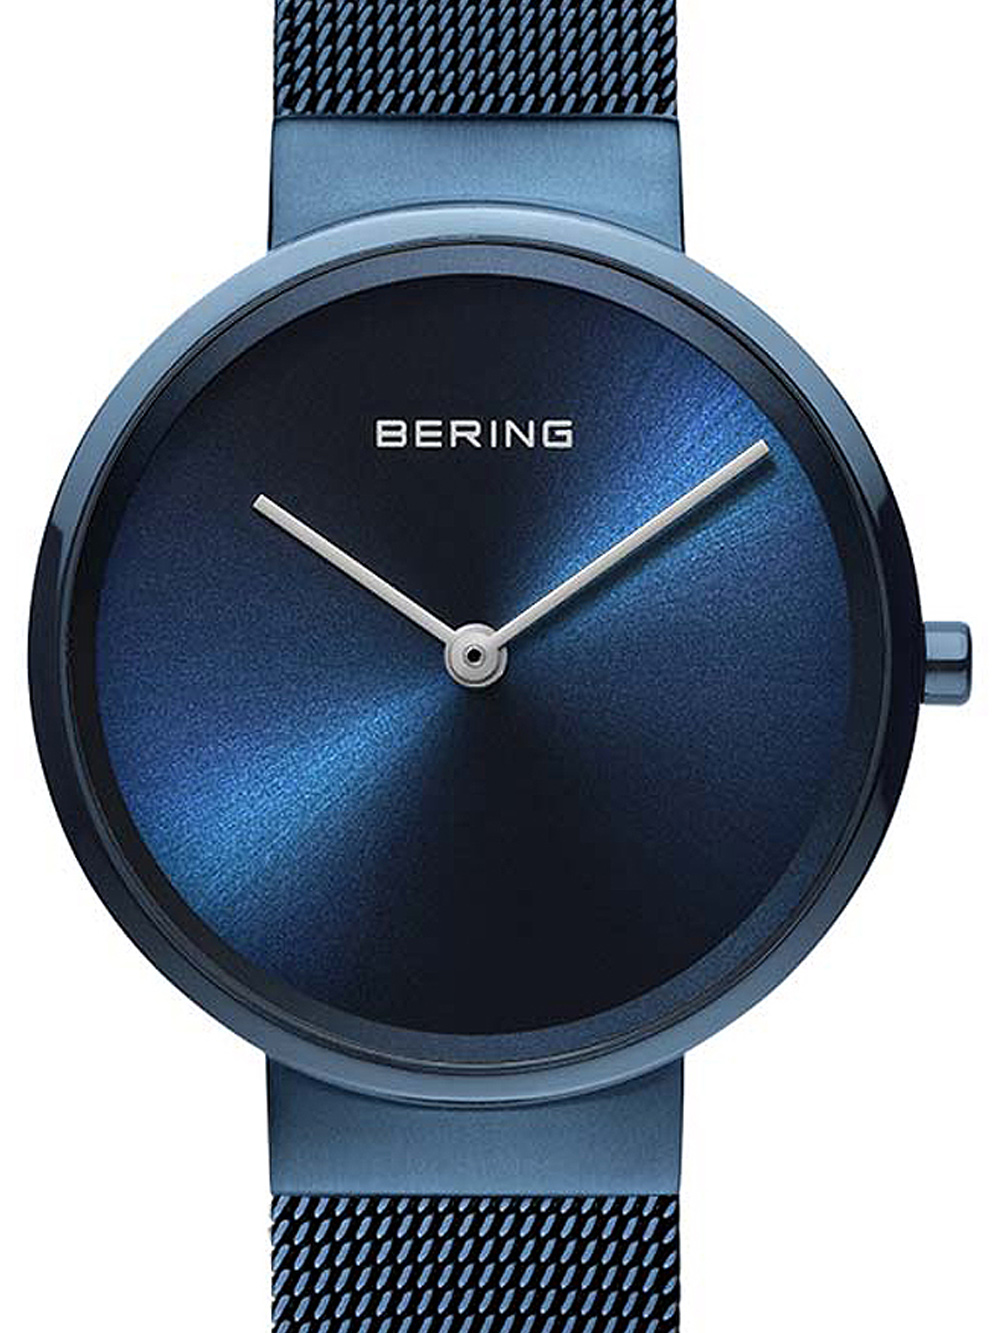 Dámské hodinky Bering 14531-397